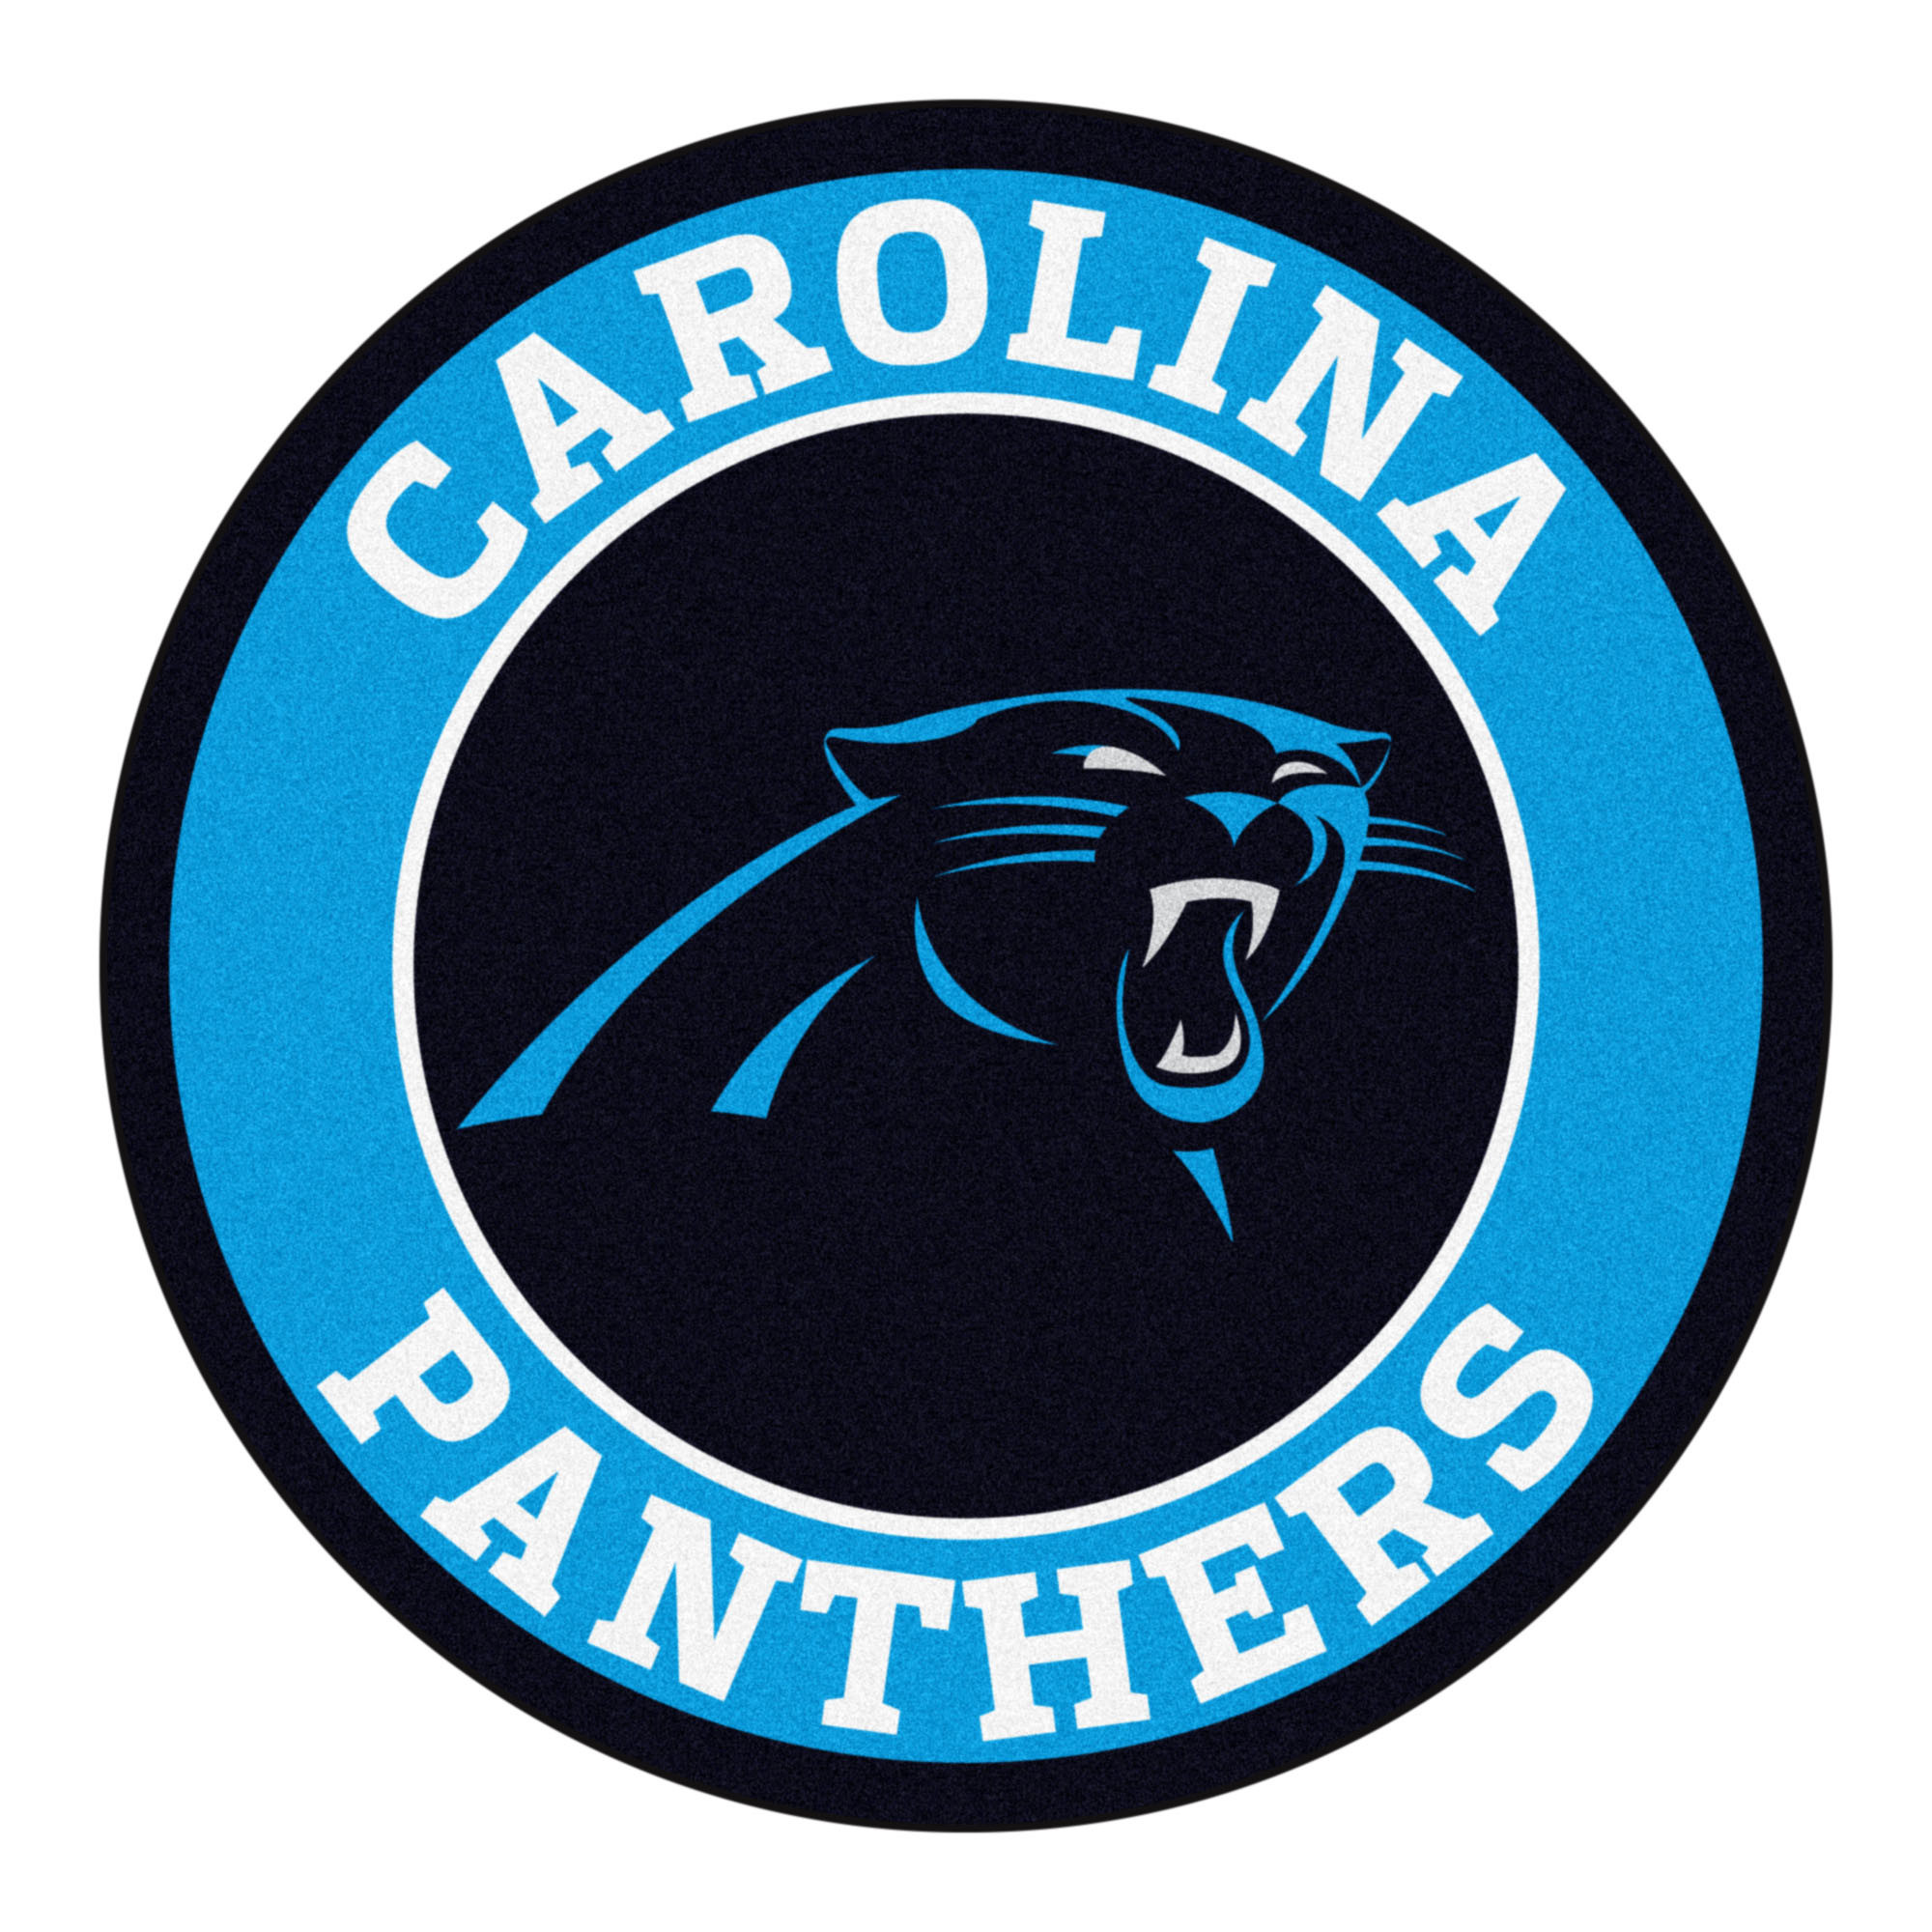 Carolina Panthers HD Wallpapers (74+ images)